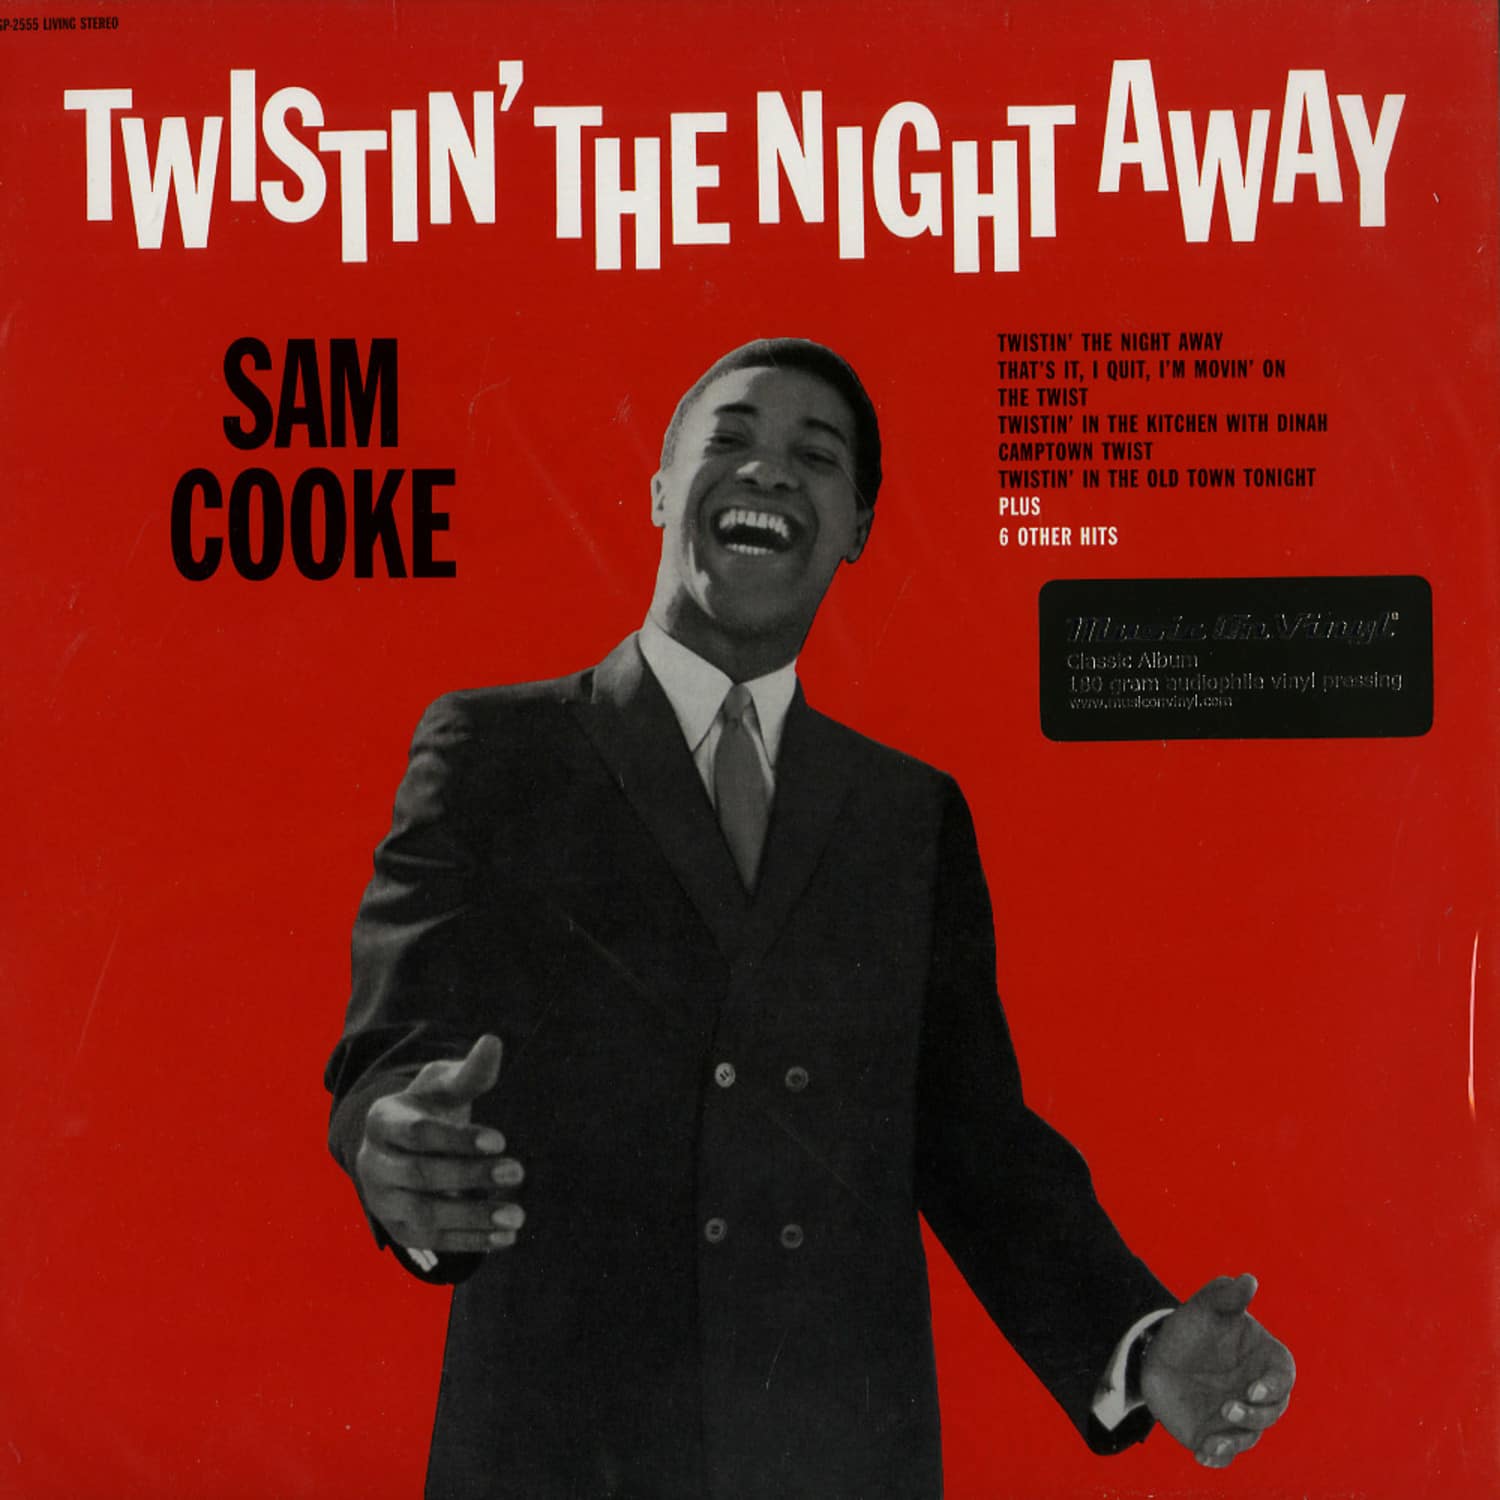 Sam Cooke - TWISTIN THE NIGHT AWAY 